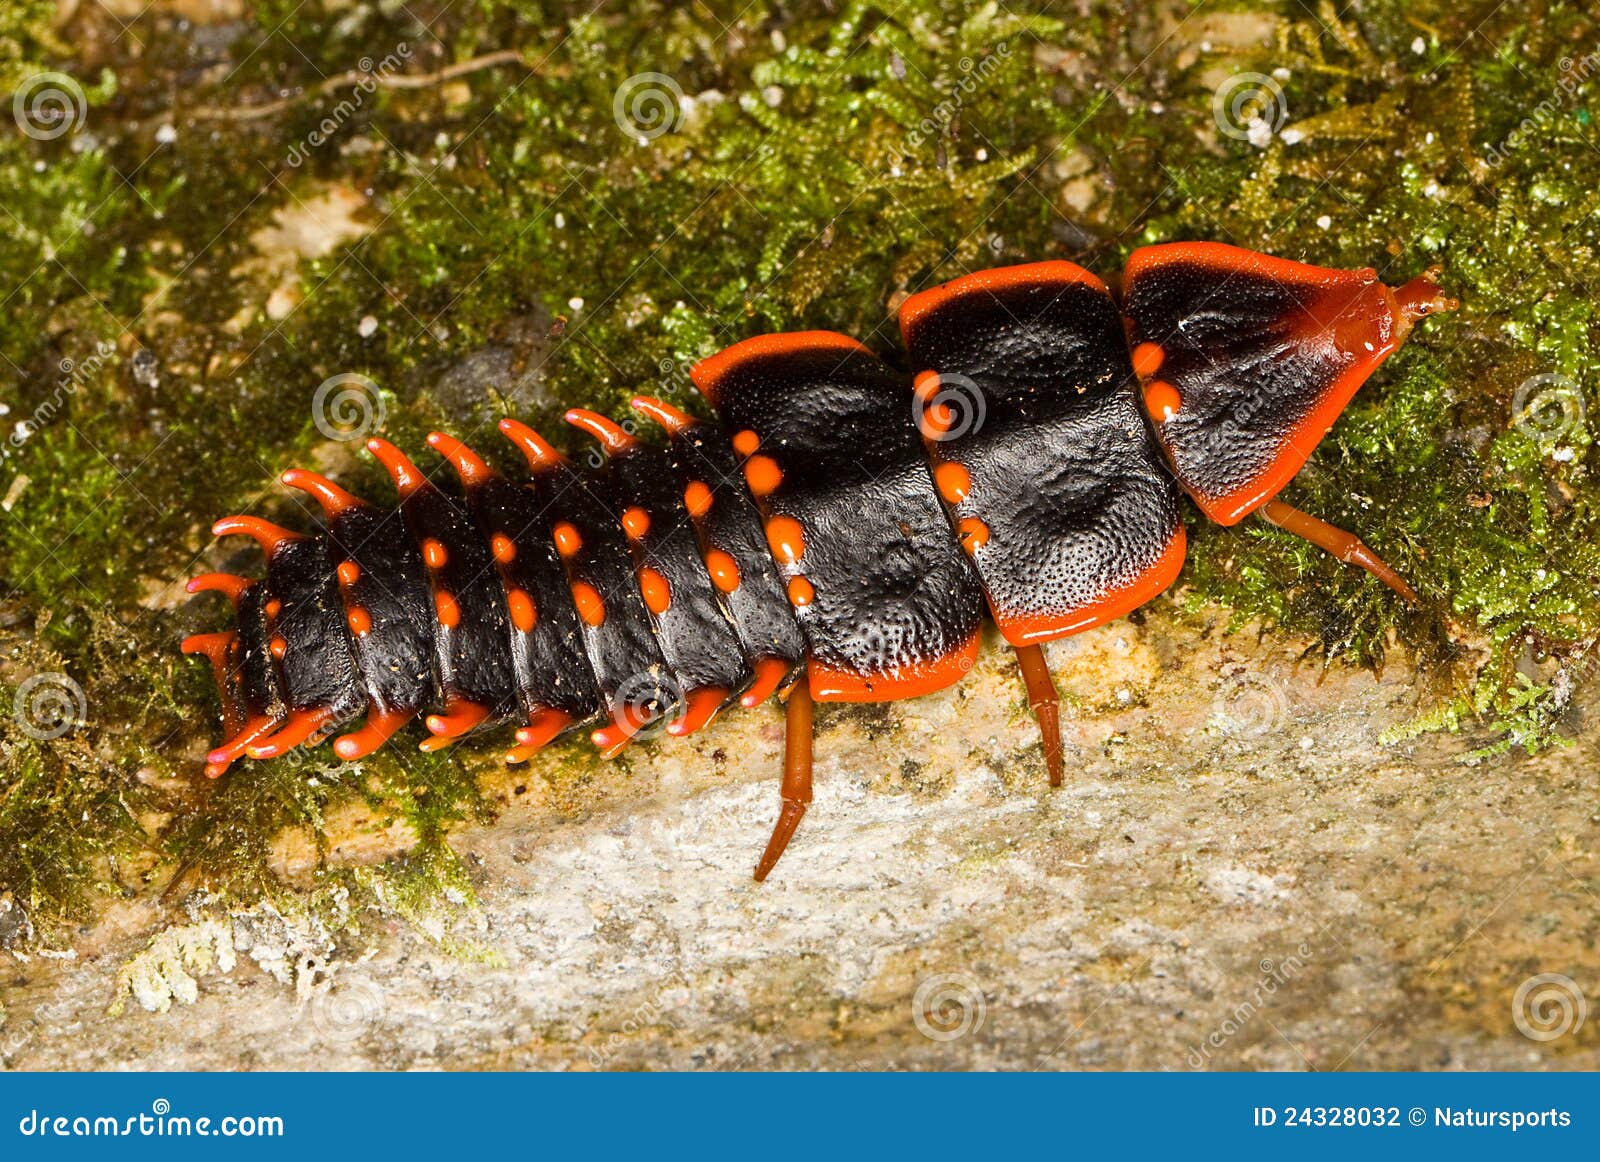 trilobite beetle